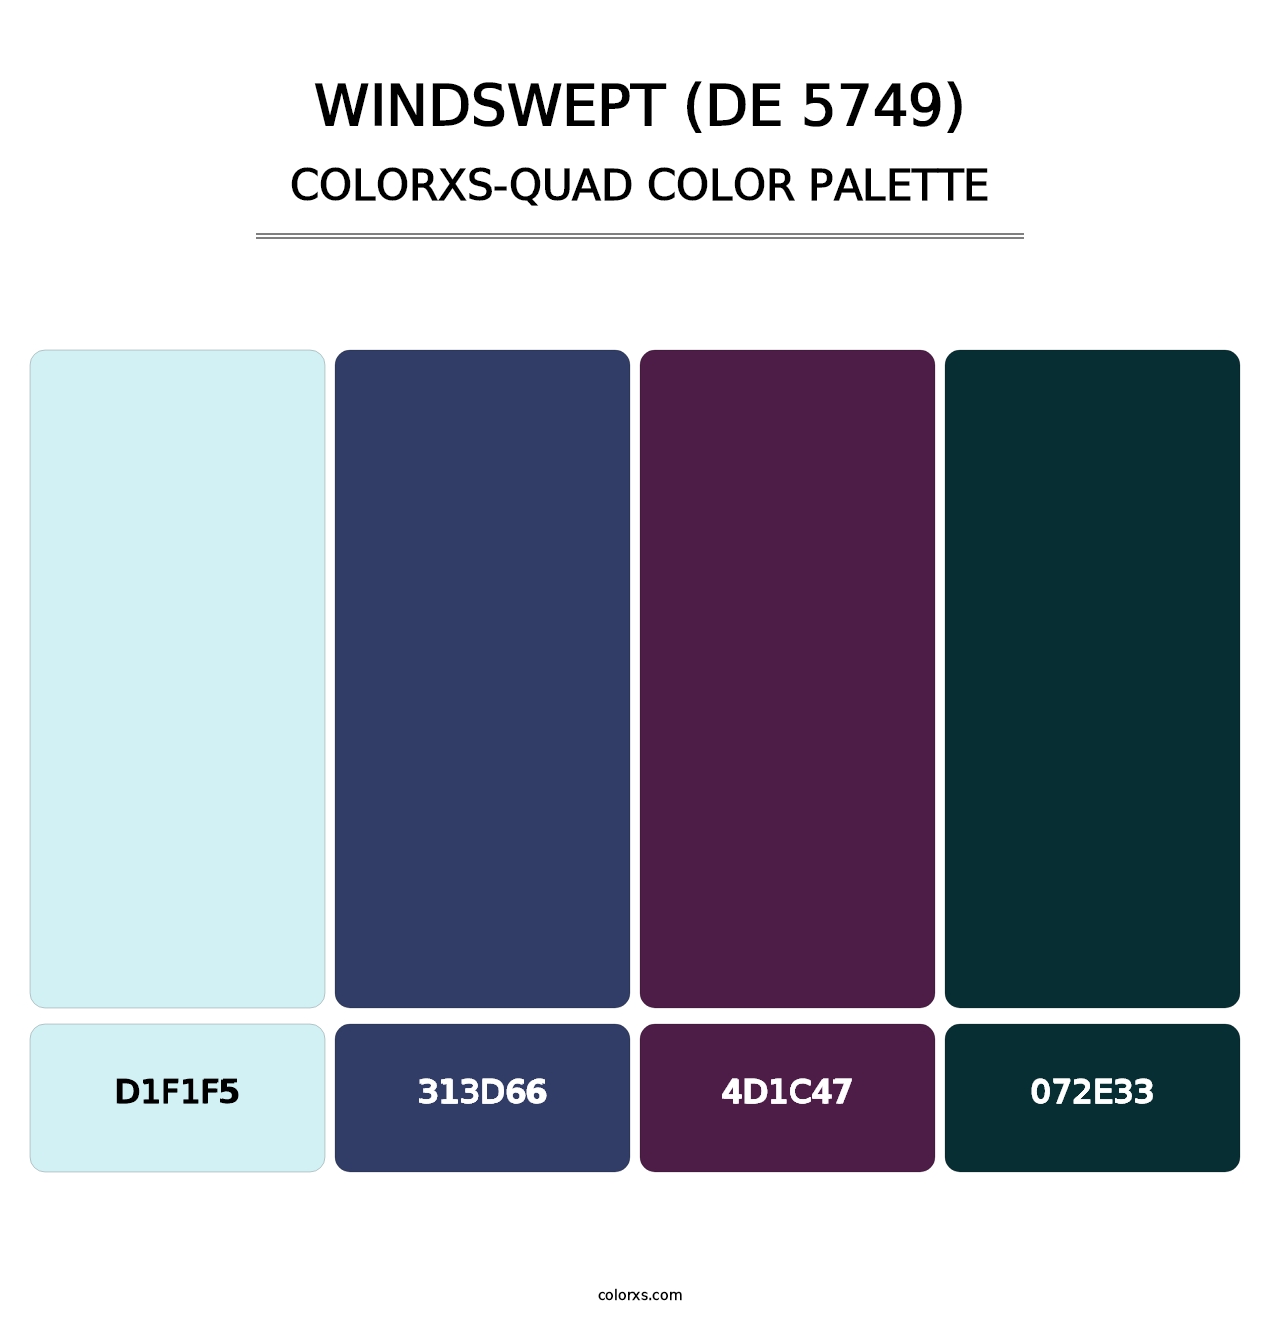 Windswept (DE 5749) - Colorxs Quad Palette